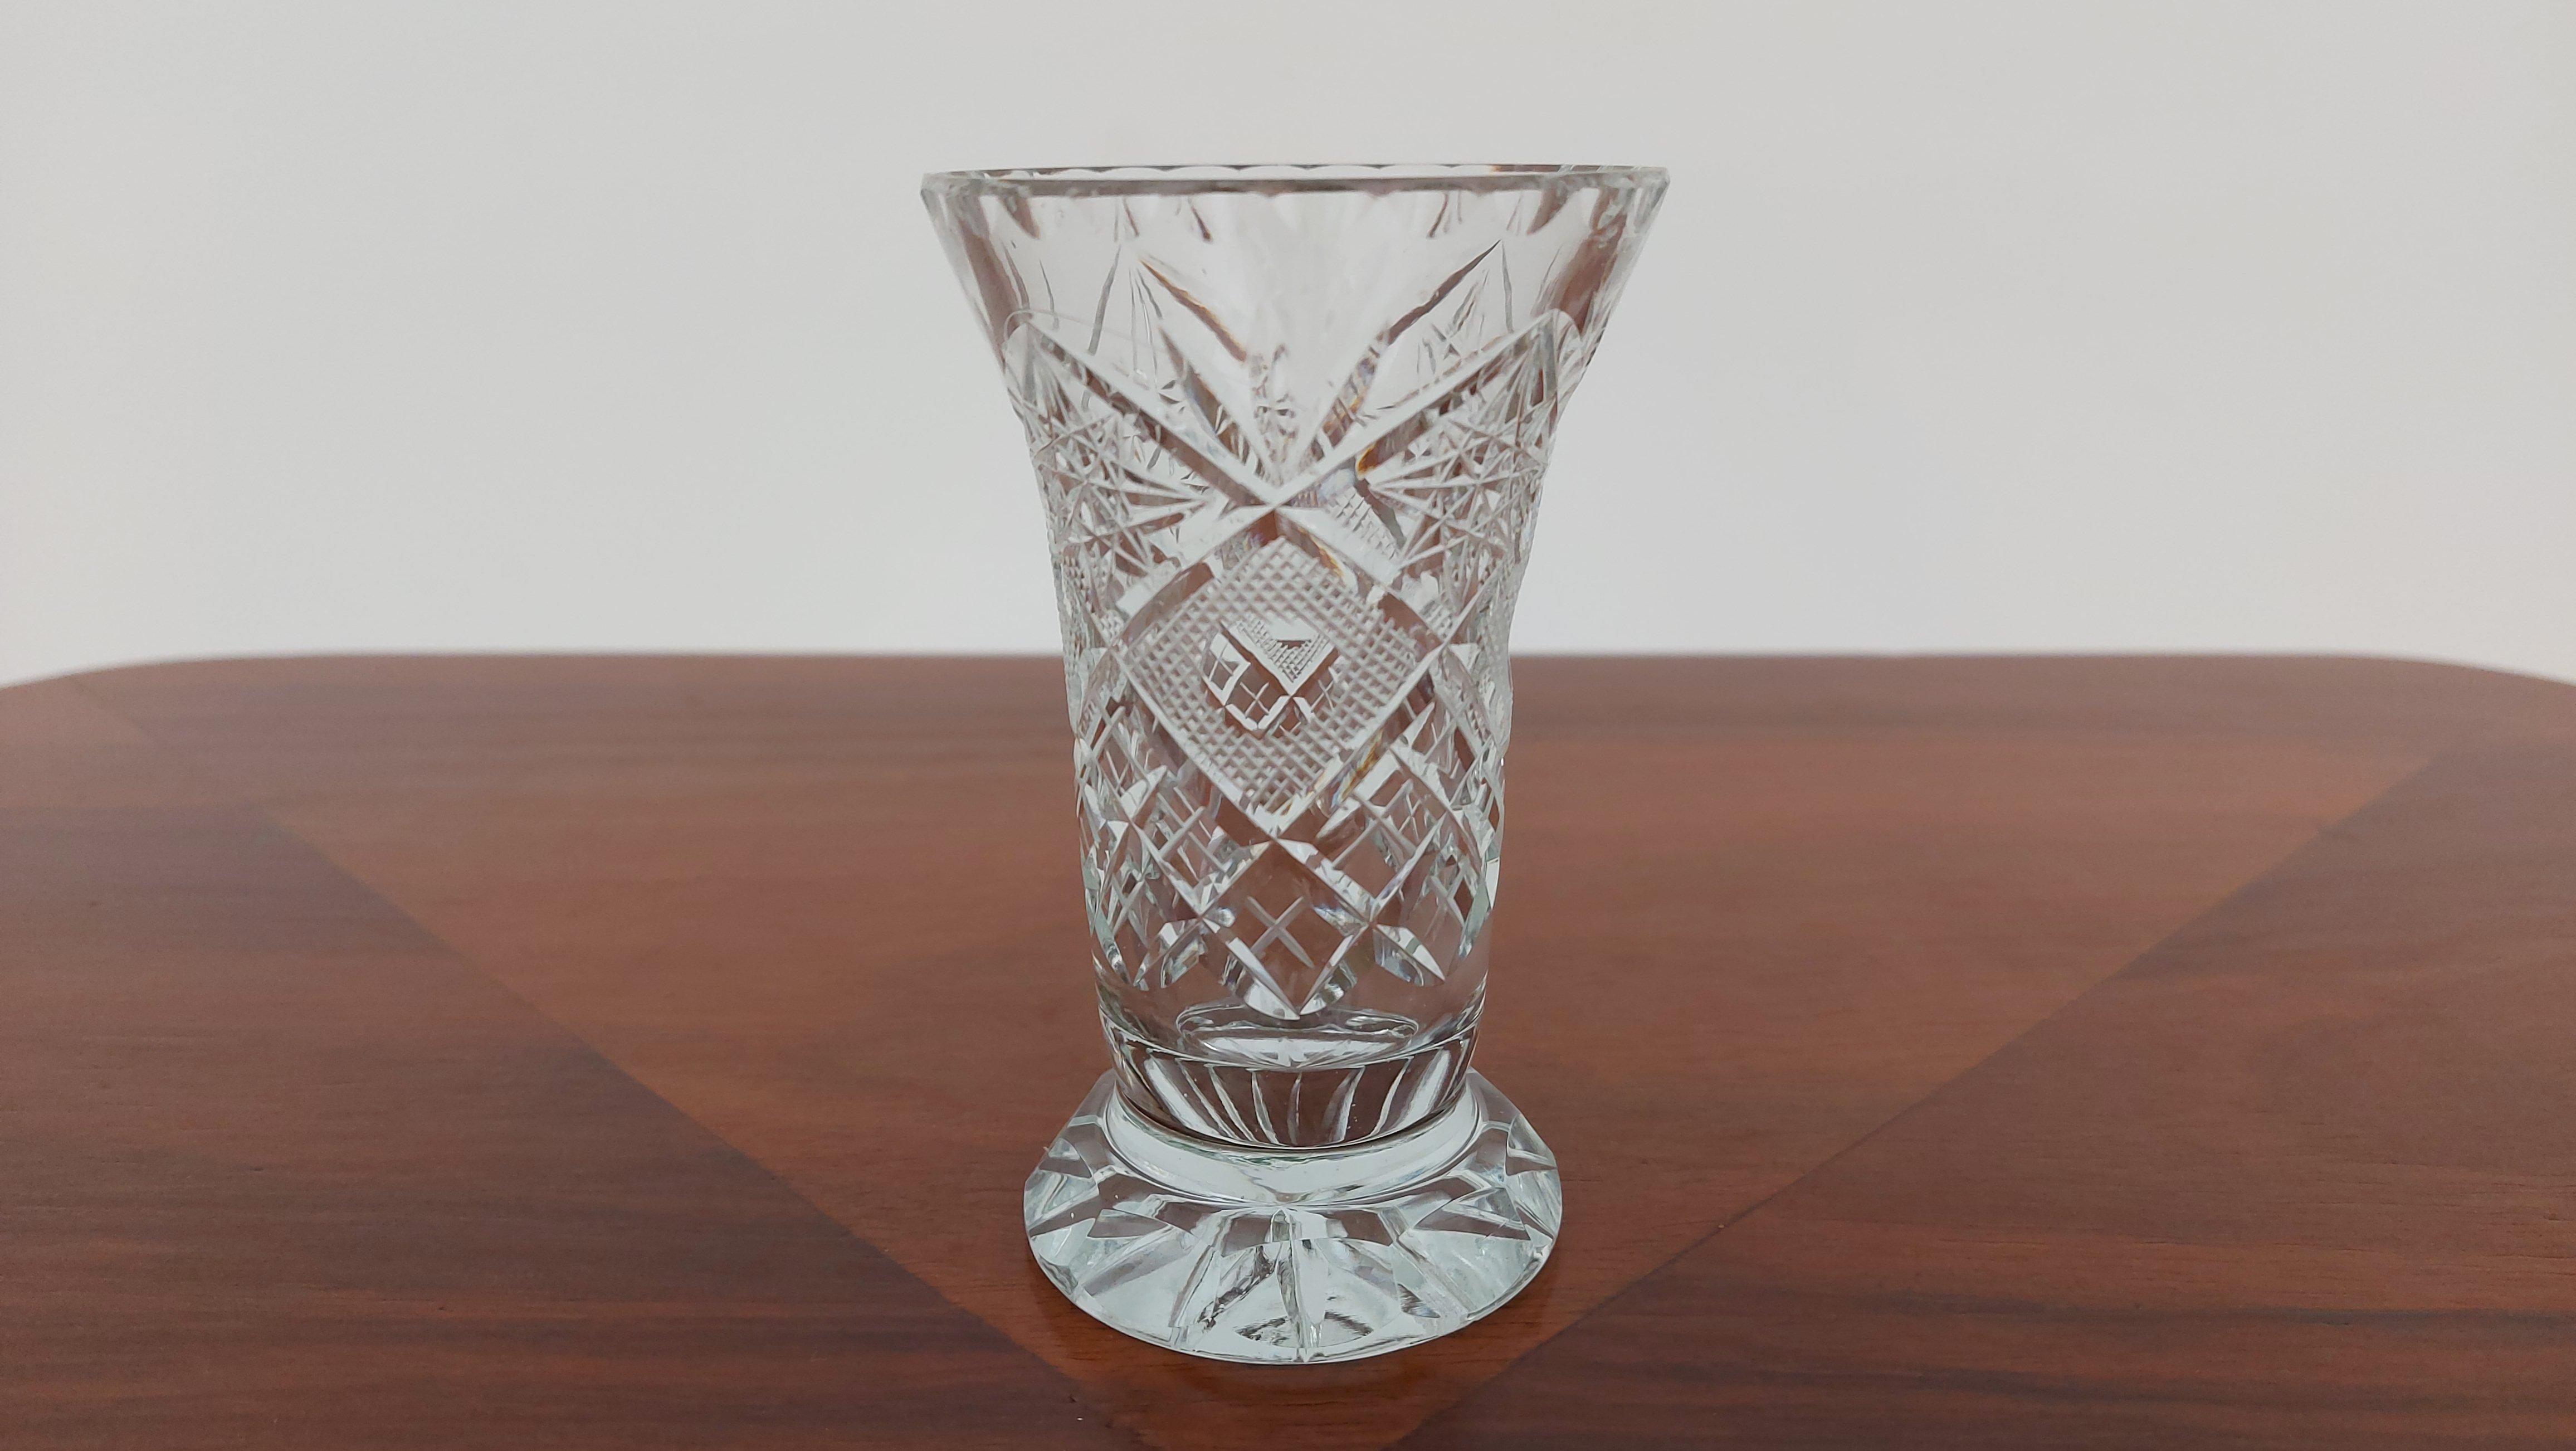 Eine kleine Vase aus Kristall. Die Vase wurde in den 1960er und 1970er Jahren in Polen hergestellt.

Vase in sehr gutem Zustand

Höhe 10,5 cm / Durchmesser 7 cm.